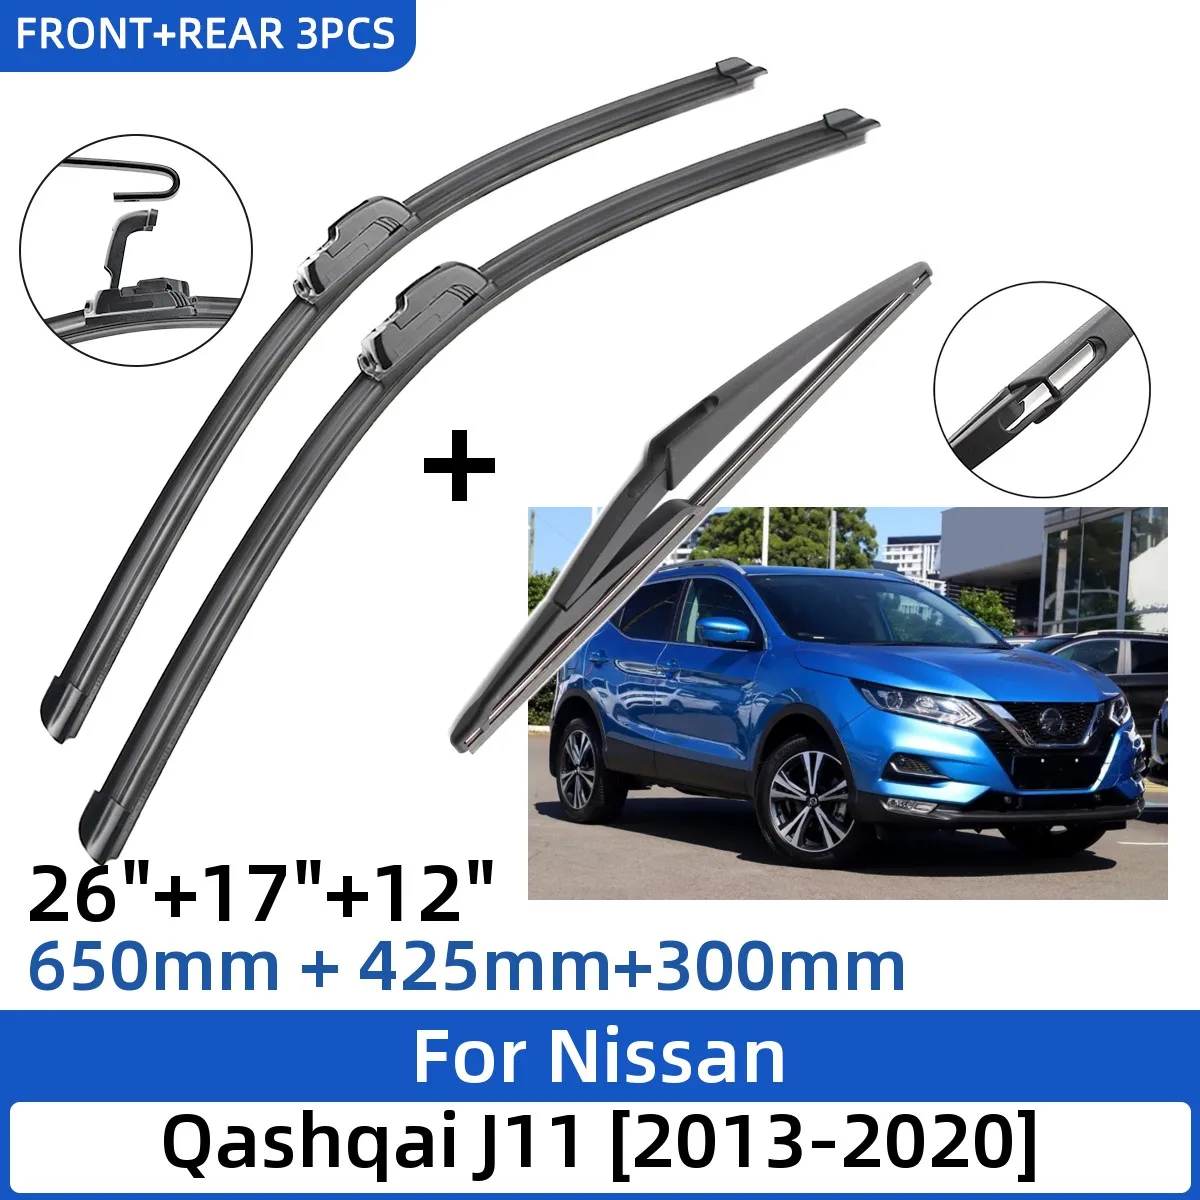 

3PCS For Nissan Qashqai J11 2013-2020 26"+17"+12" Front Rear Wiper Blades Windshield Windscreen Window Cutter Accessories 2013